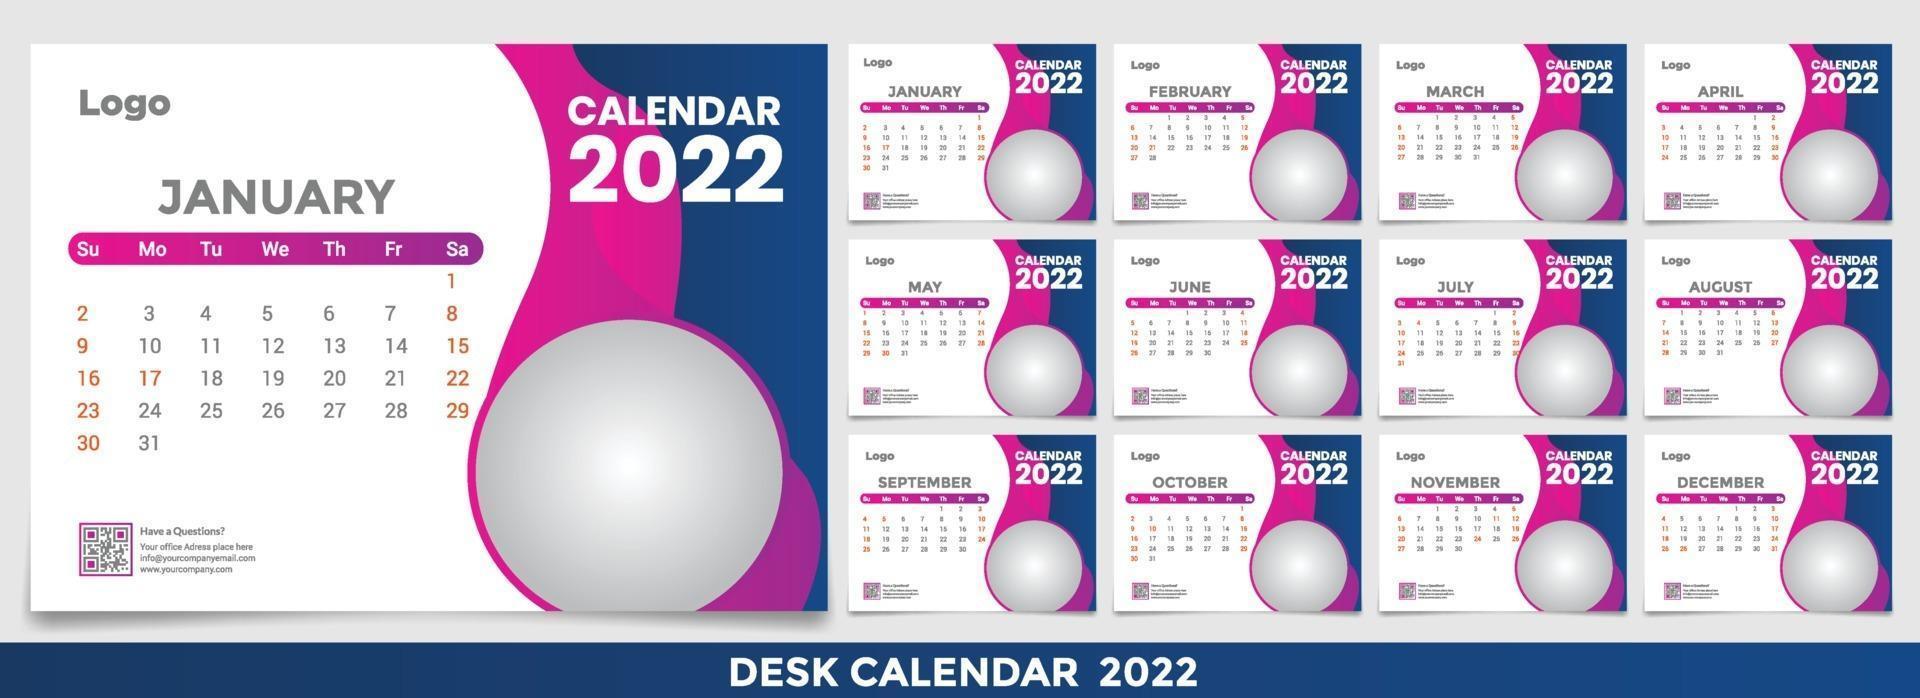 calendario 2022, establezca el diseño de la plantilla de calendario de escritorio con lugar para la foto y el logotipo de la empresa. la semana del lunes al domingo. conjunto de 12 meses vector